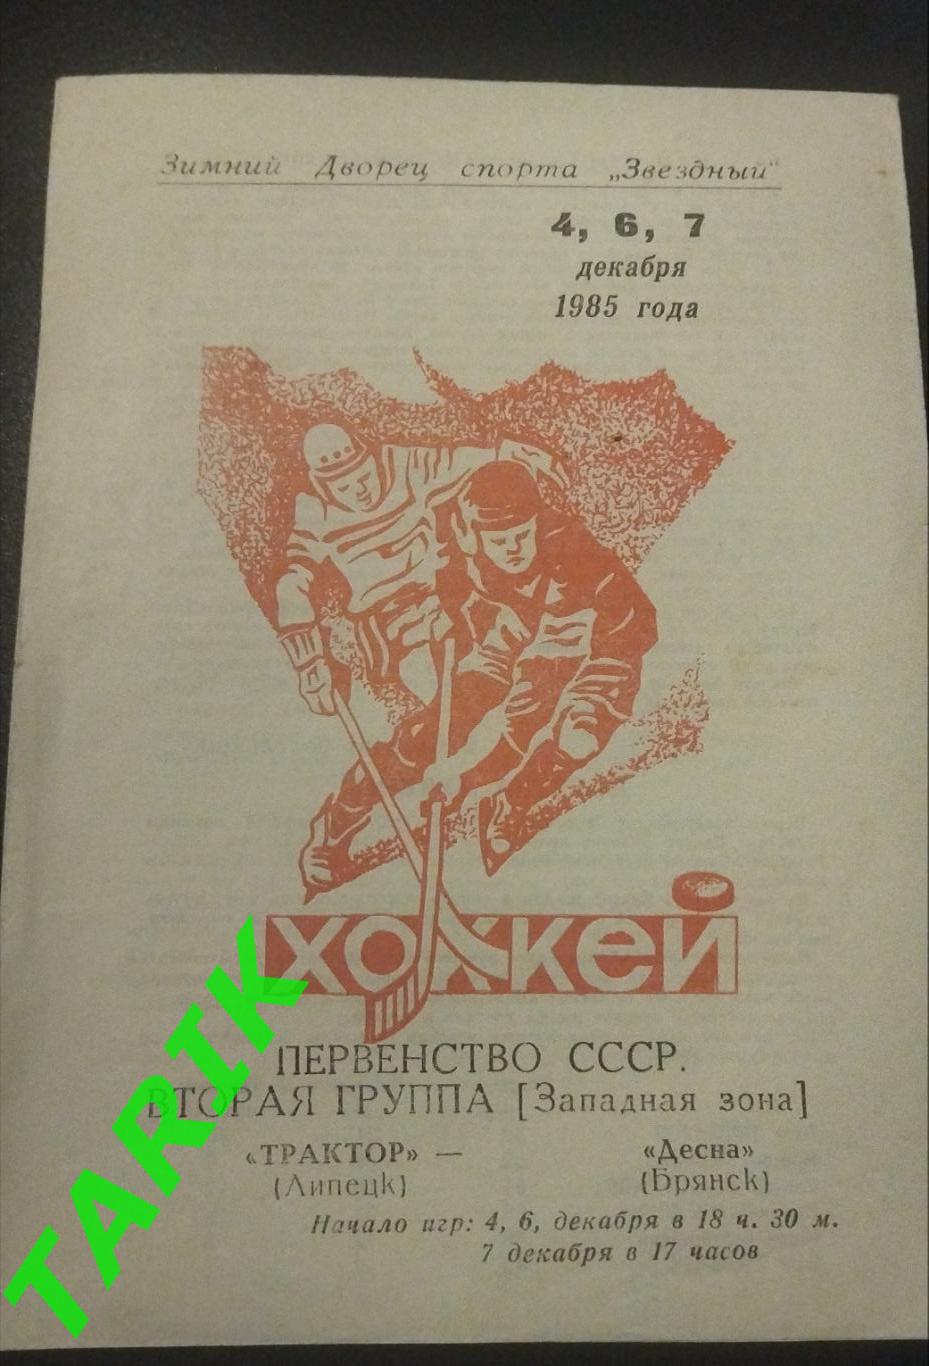 Хоккей Трактор Липецк -Десна Брянск 4-6-7 .12. 1985